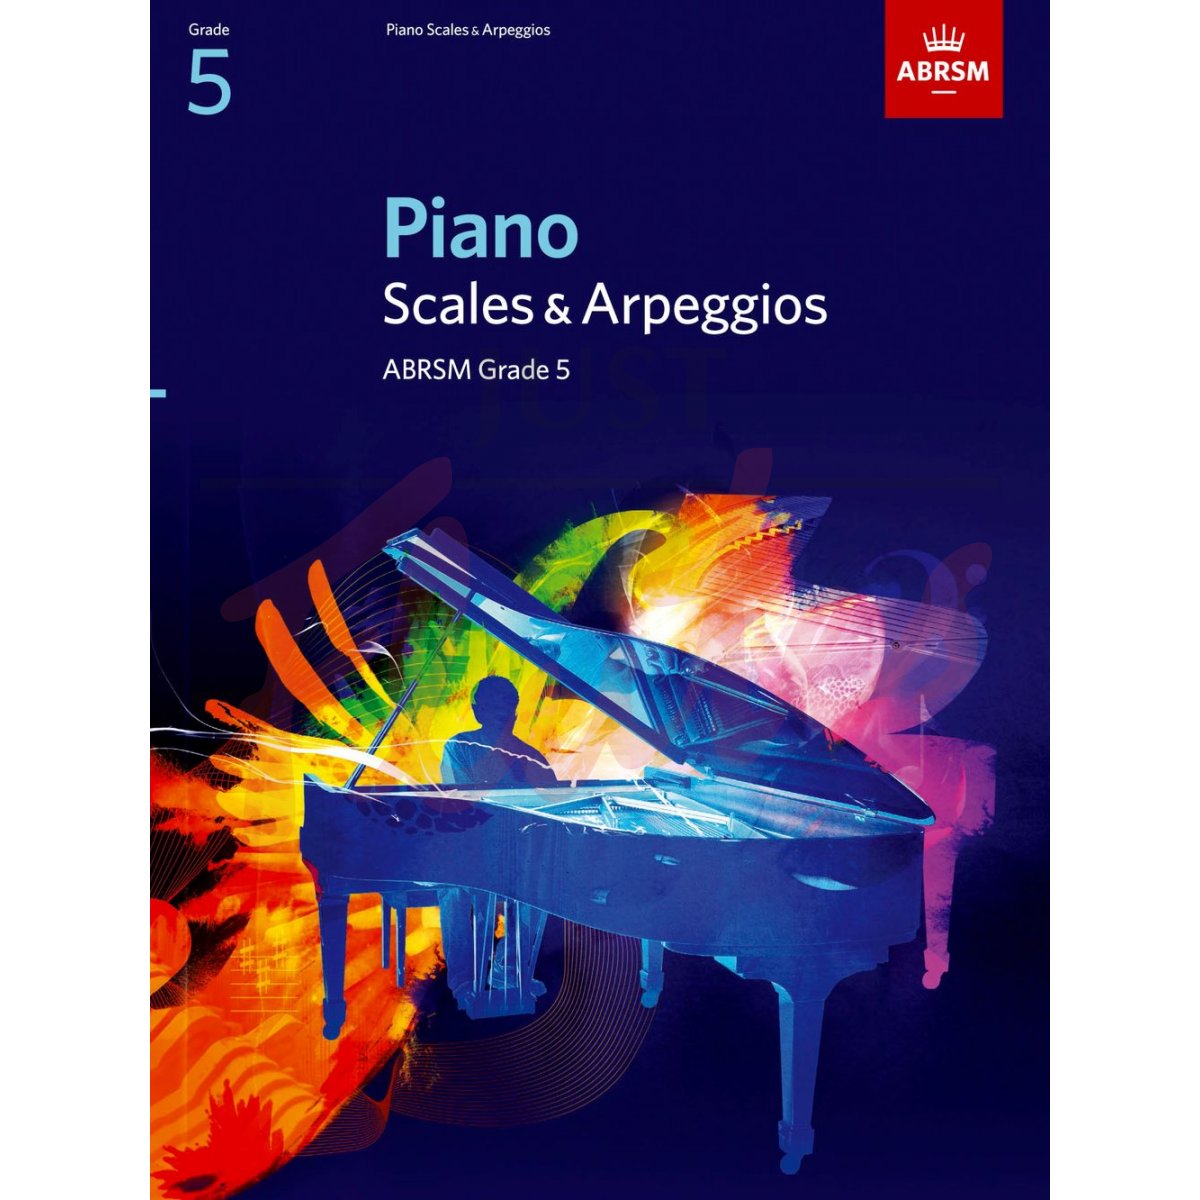 Piano Scales and Arpeggios Grade 5 (2009 to 2019)